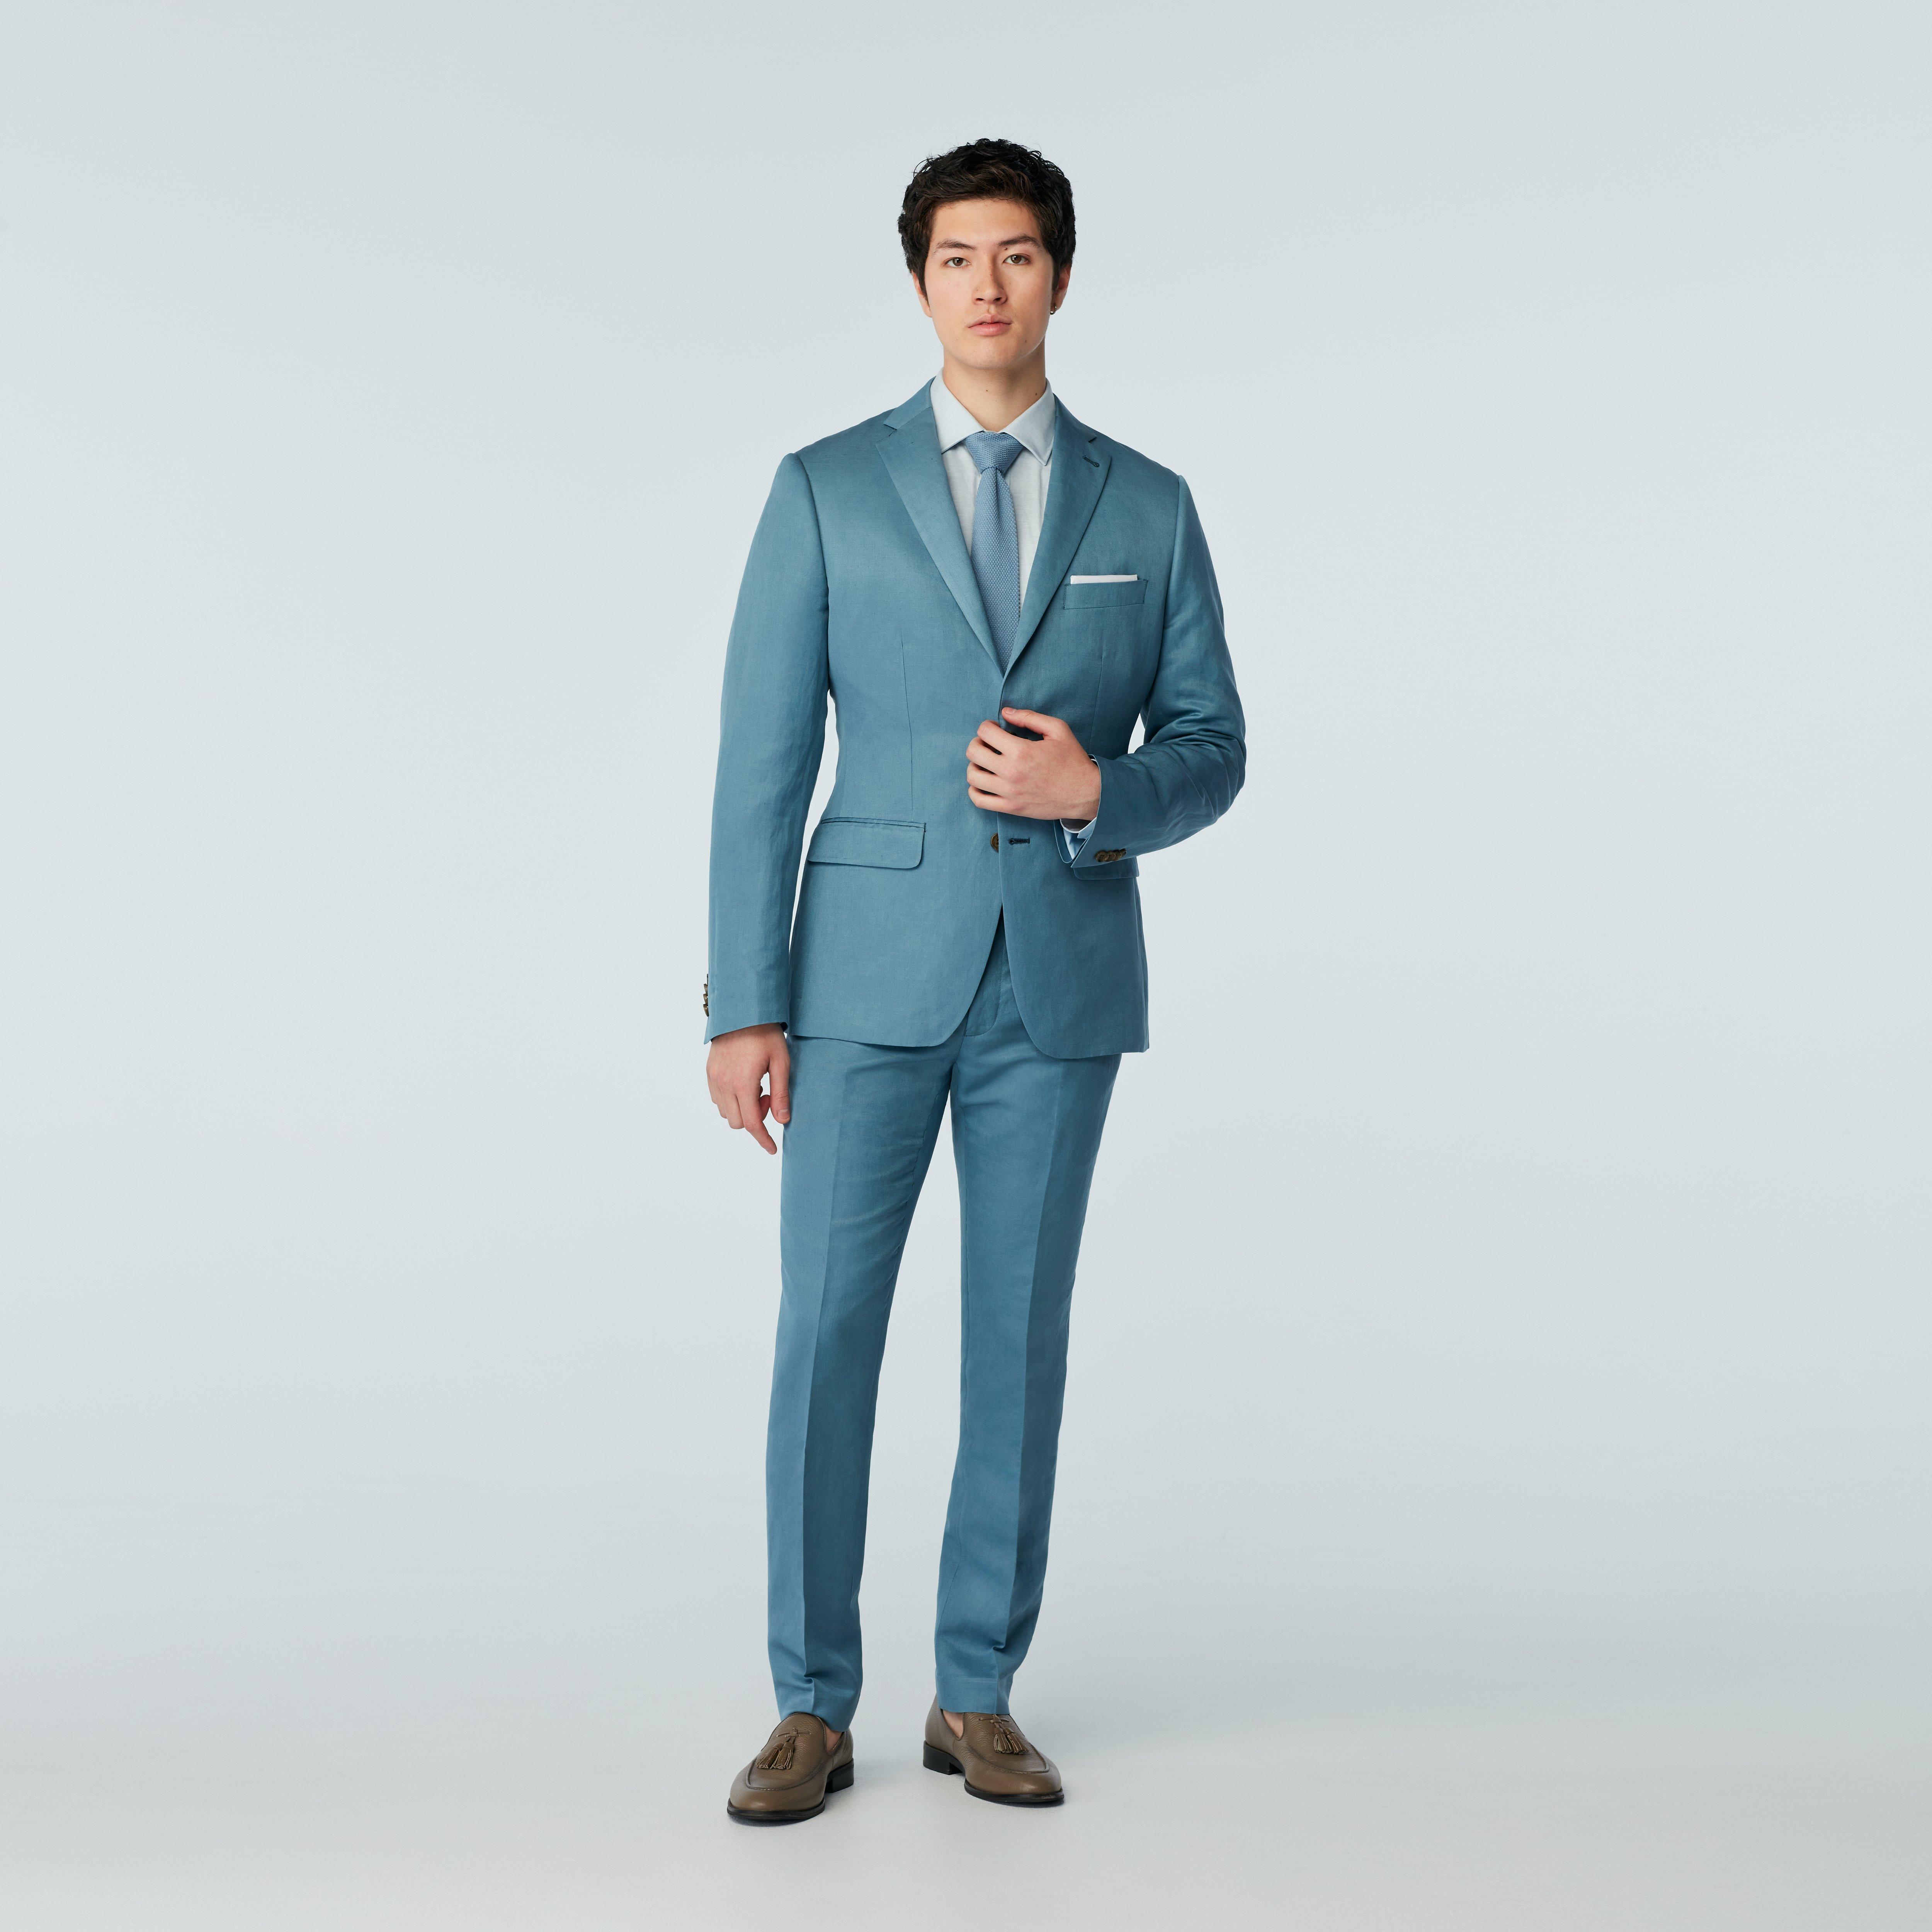 Light blue check suit, Women's Suits